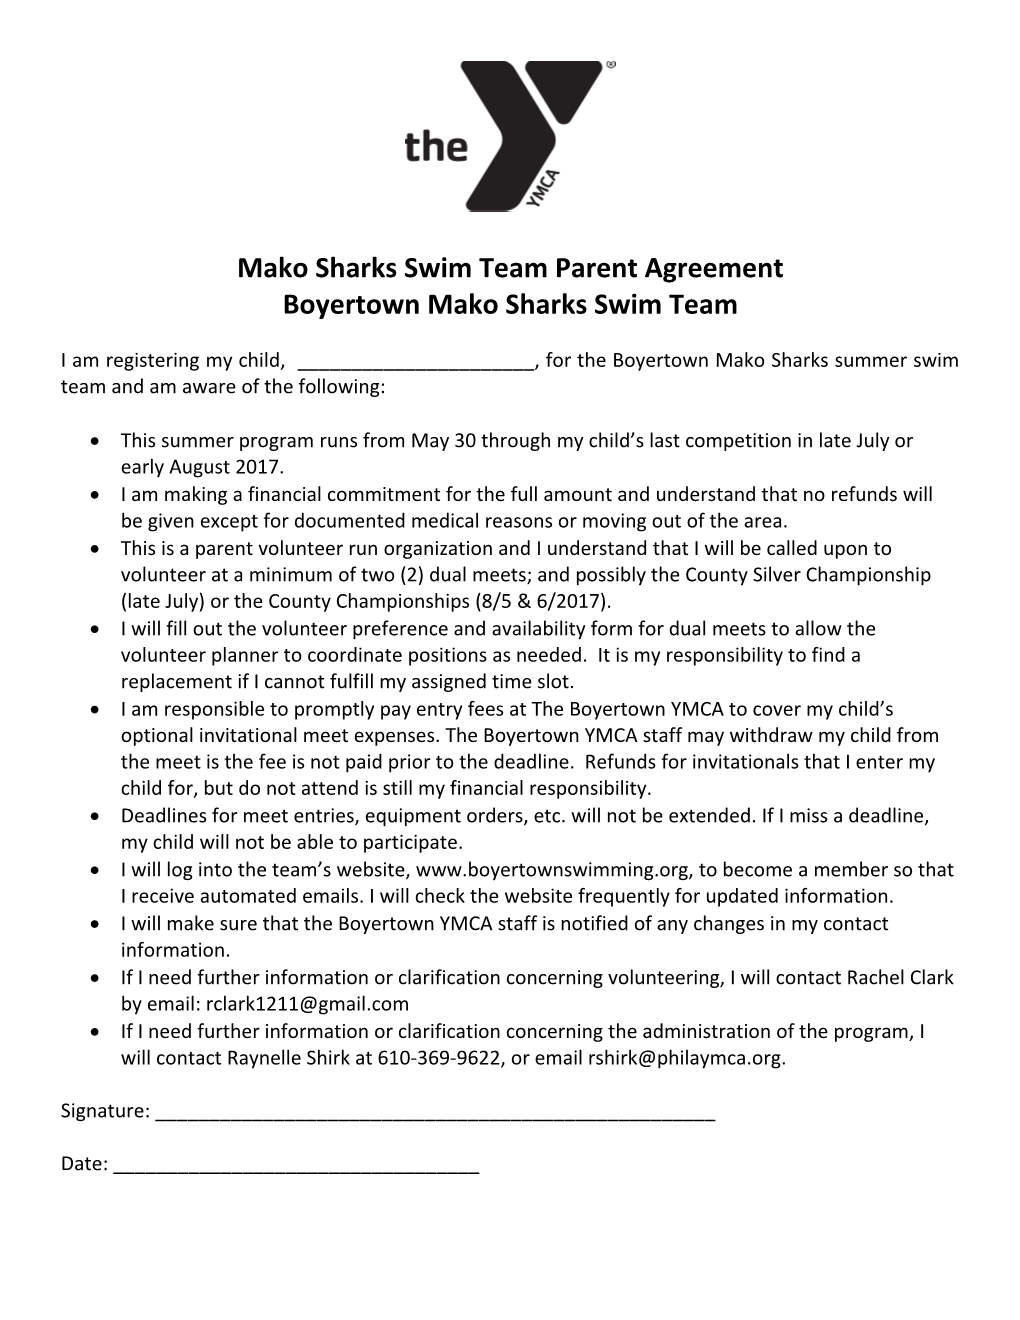 Mako Sharks Parent Agreement s1